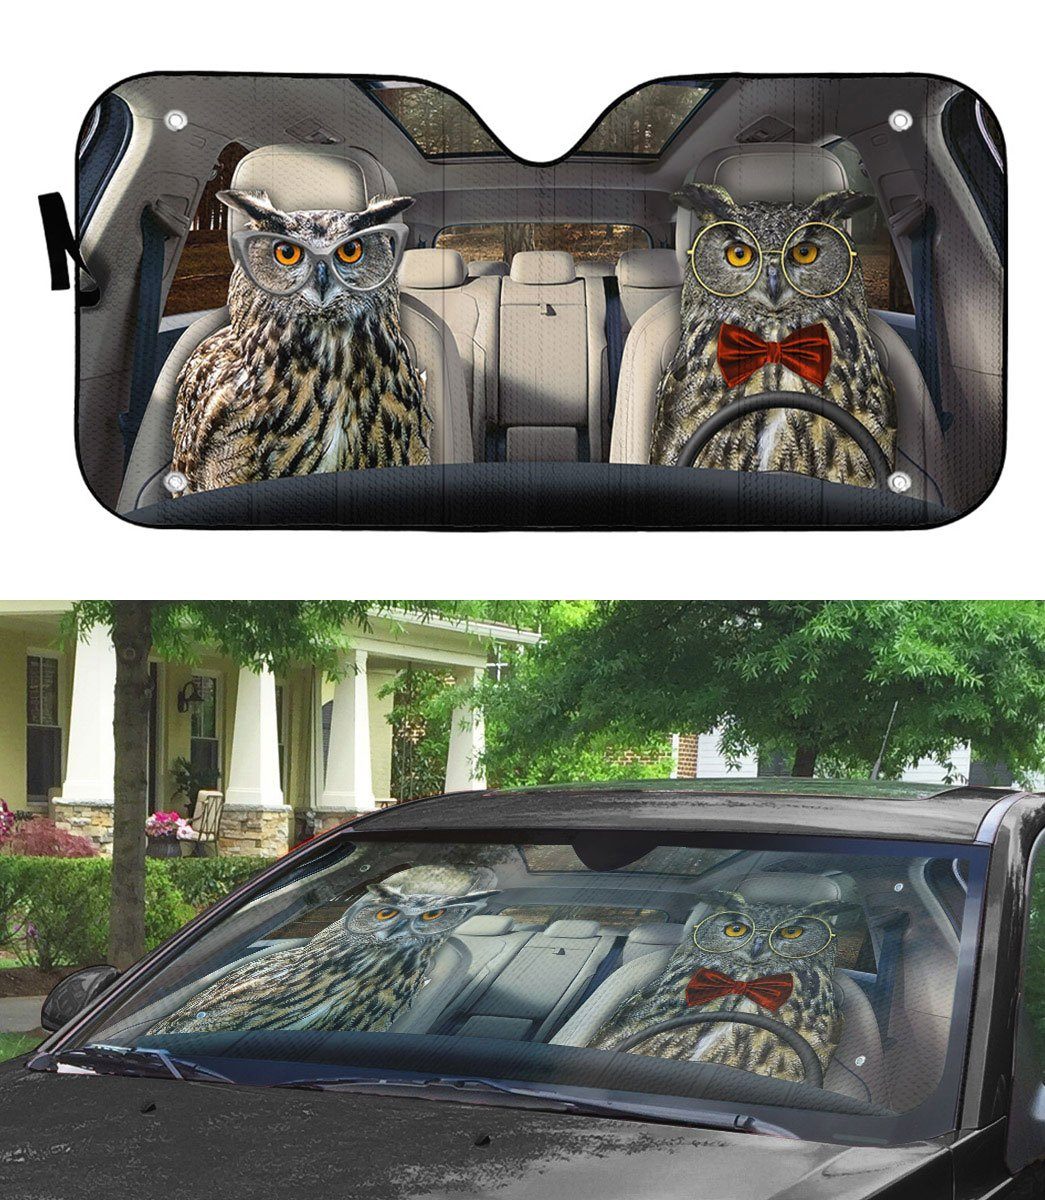 Gearhuman 3D Eagle Owls Couple Auto Car Sunshade GV05031 Auto Sunshade